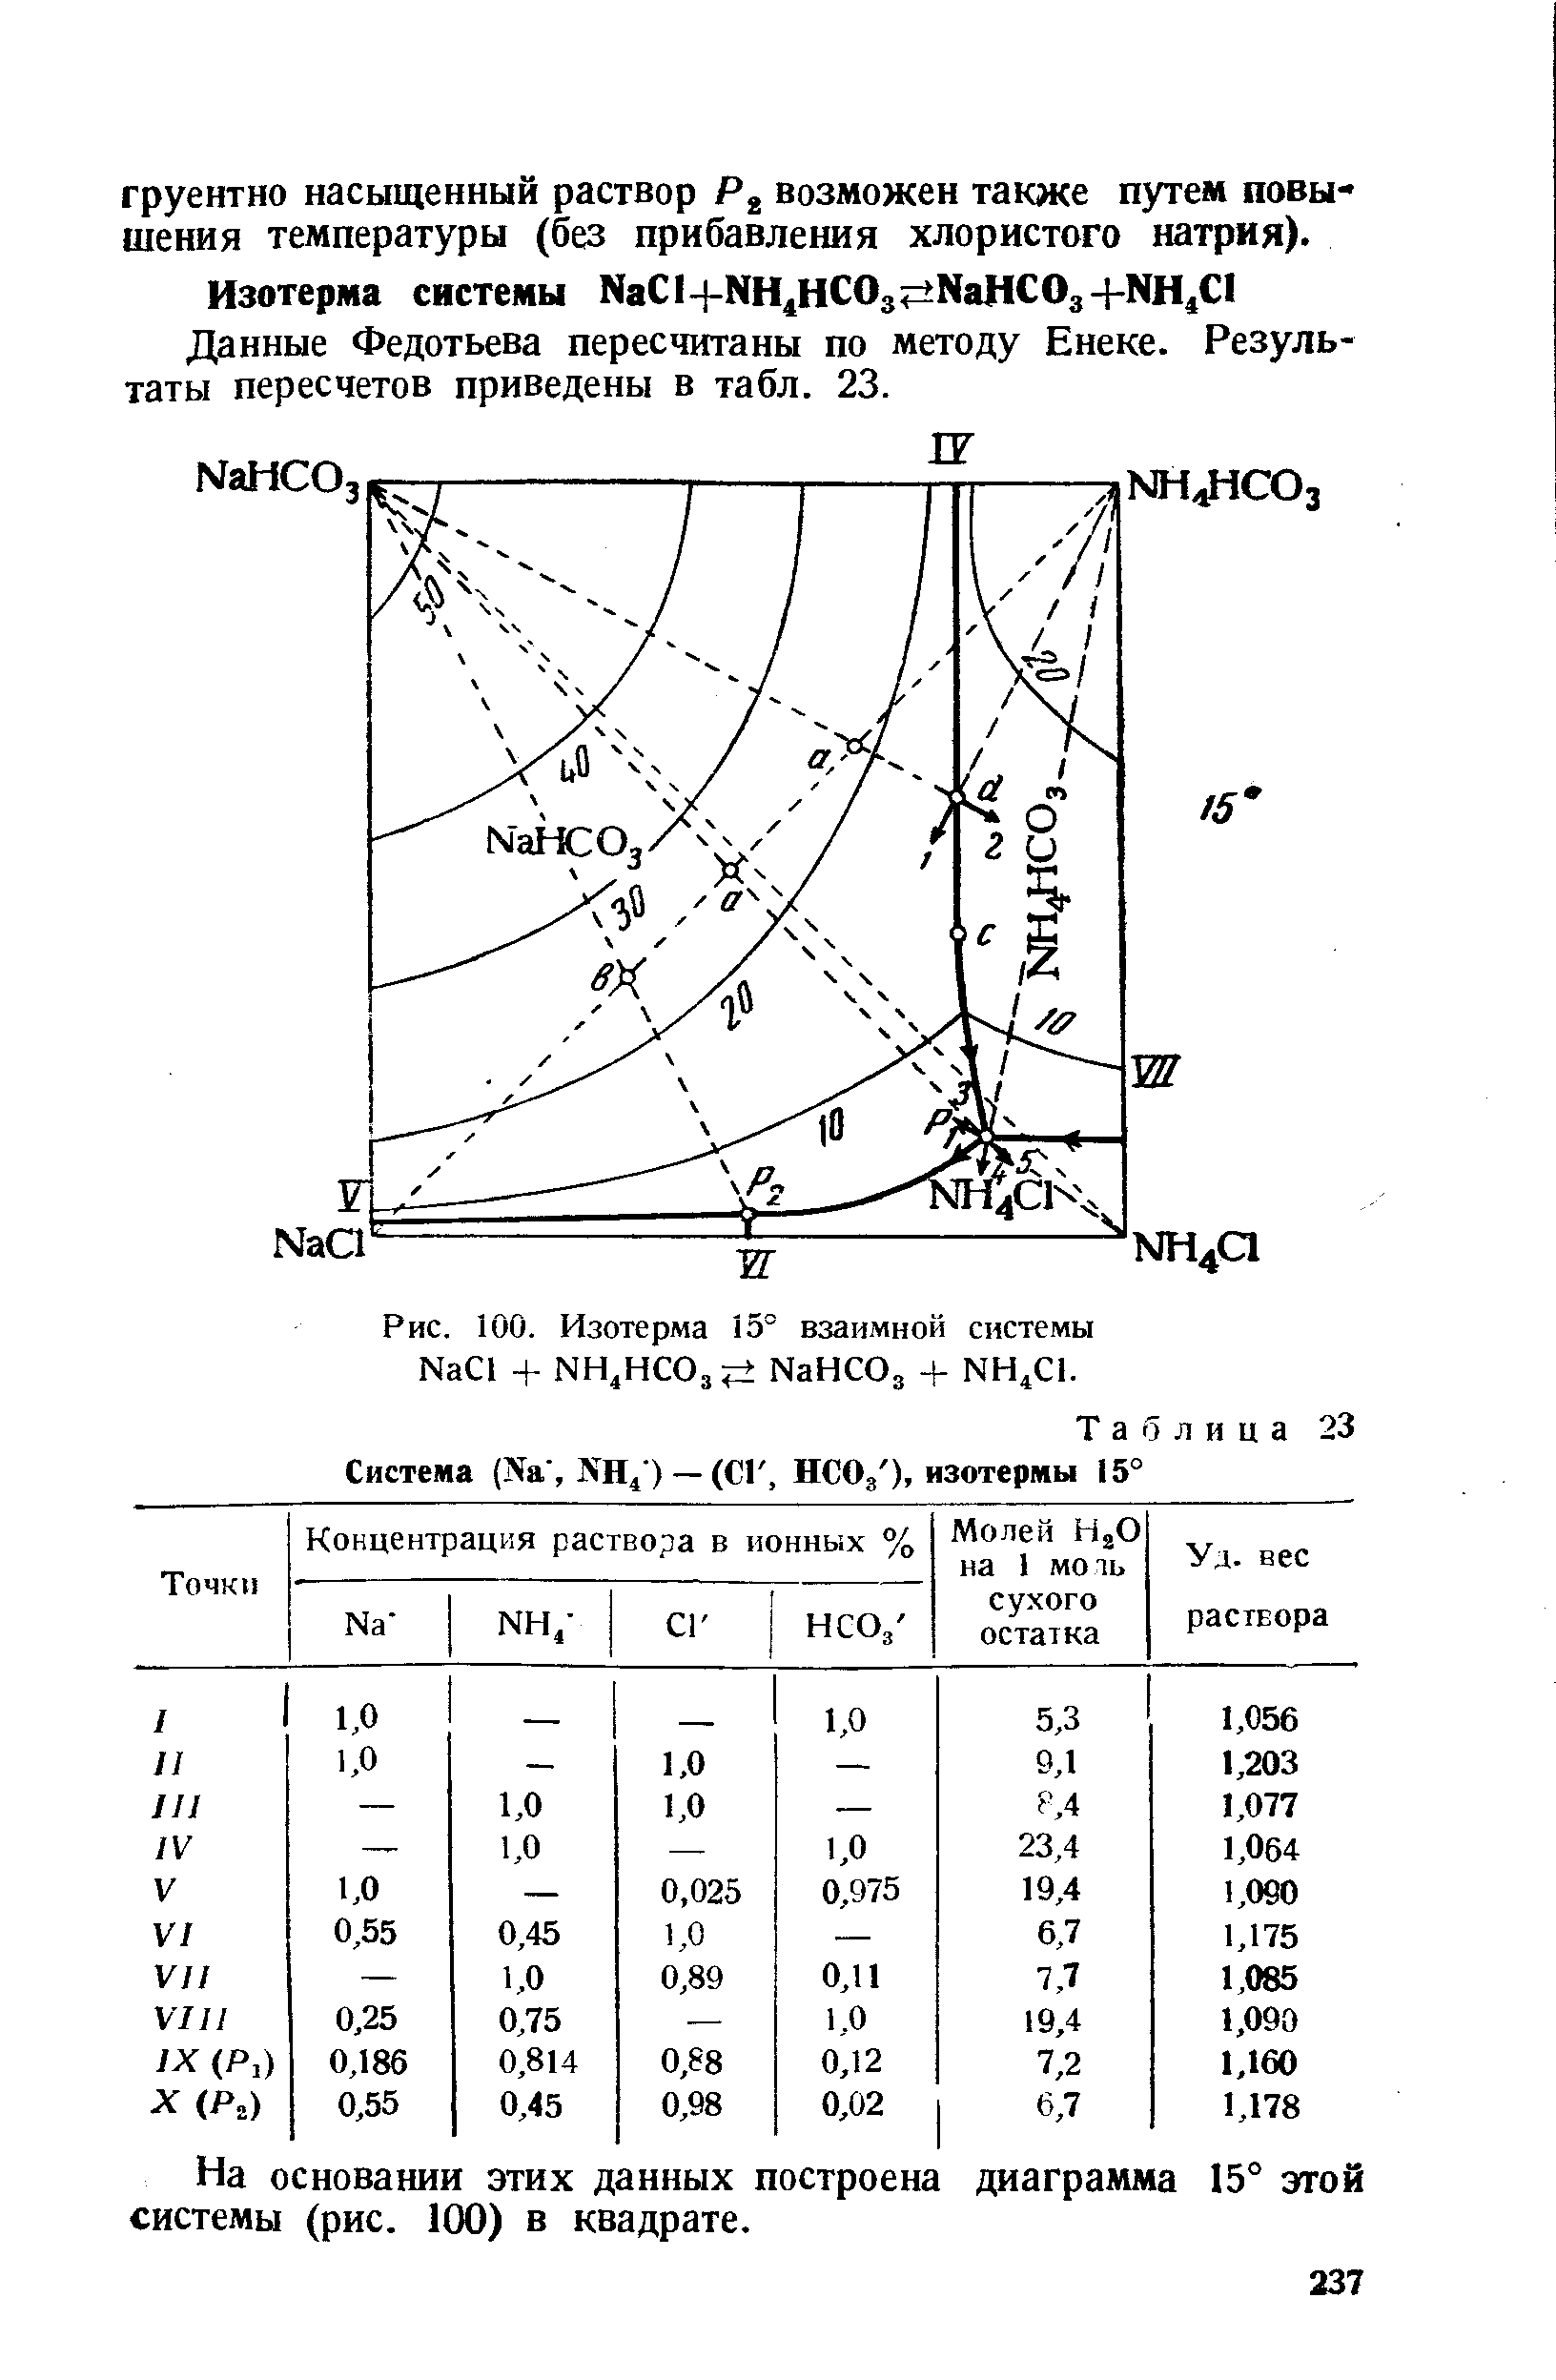 Данные Федотьева пересчитаны по методу Енеке. Результаты пересчетов приведены в табл. 23.